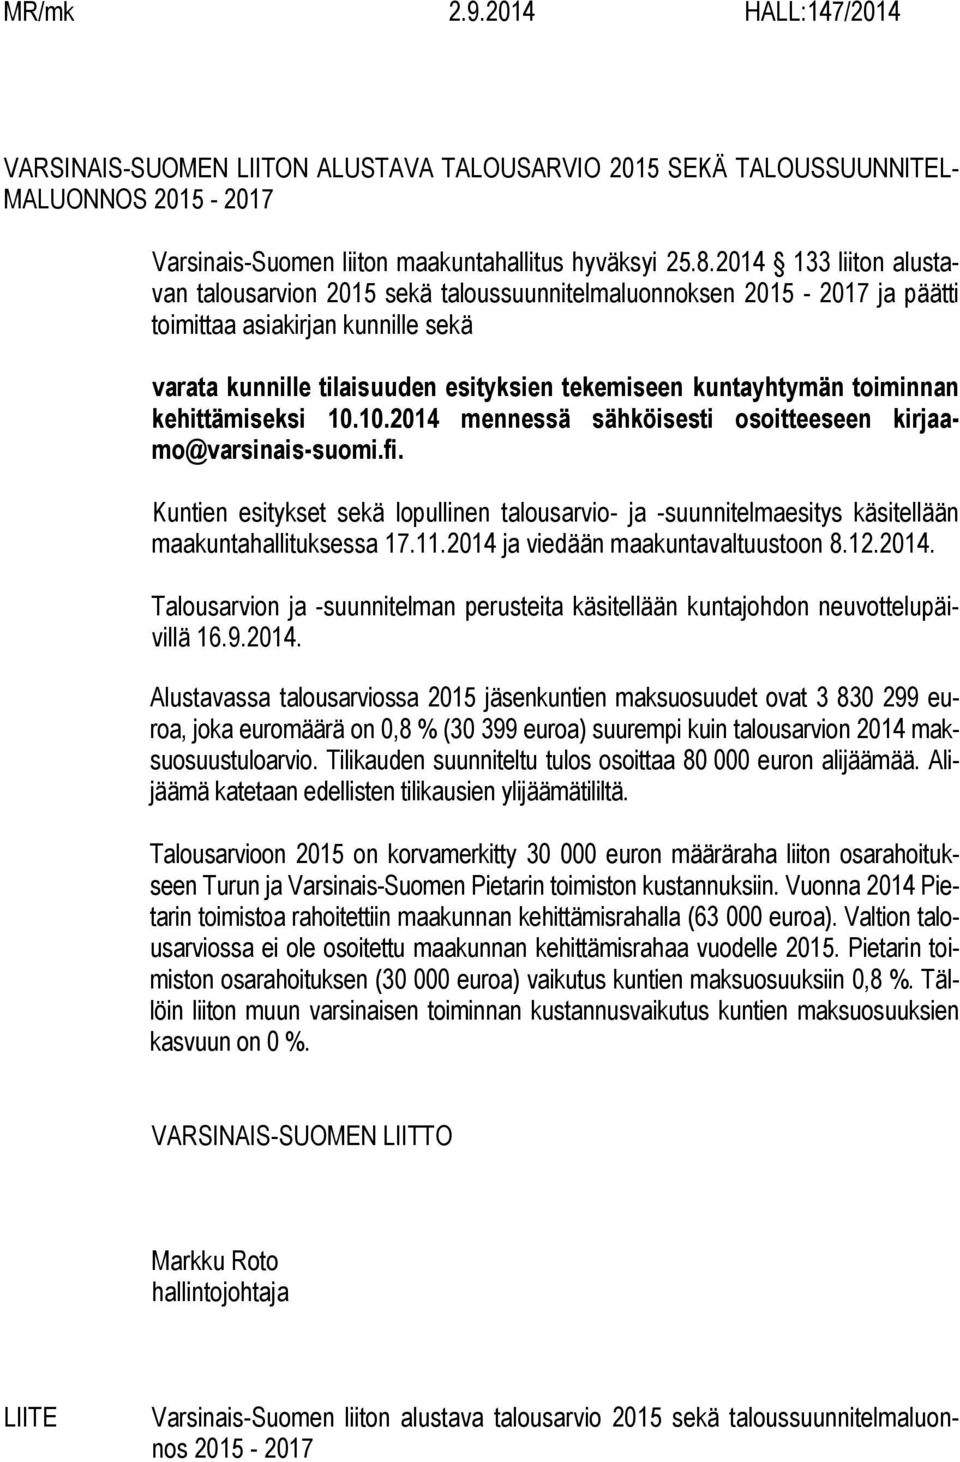 toiminnan kehittämiseksi 10.10.2014 mennessä sähköisesti osoitteeseen kirjaamo@varsinais-suomi.fi.